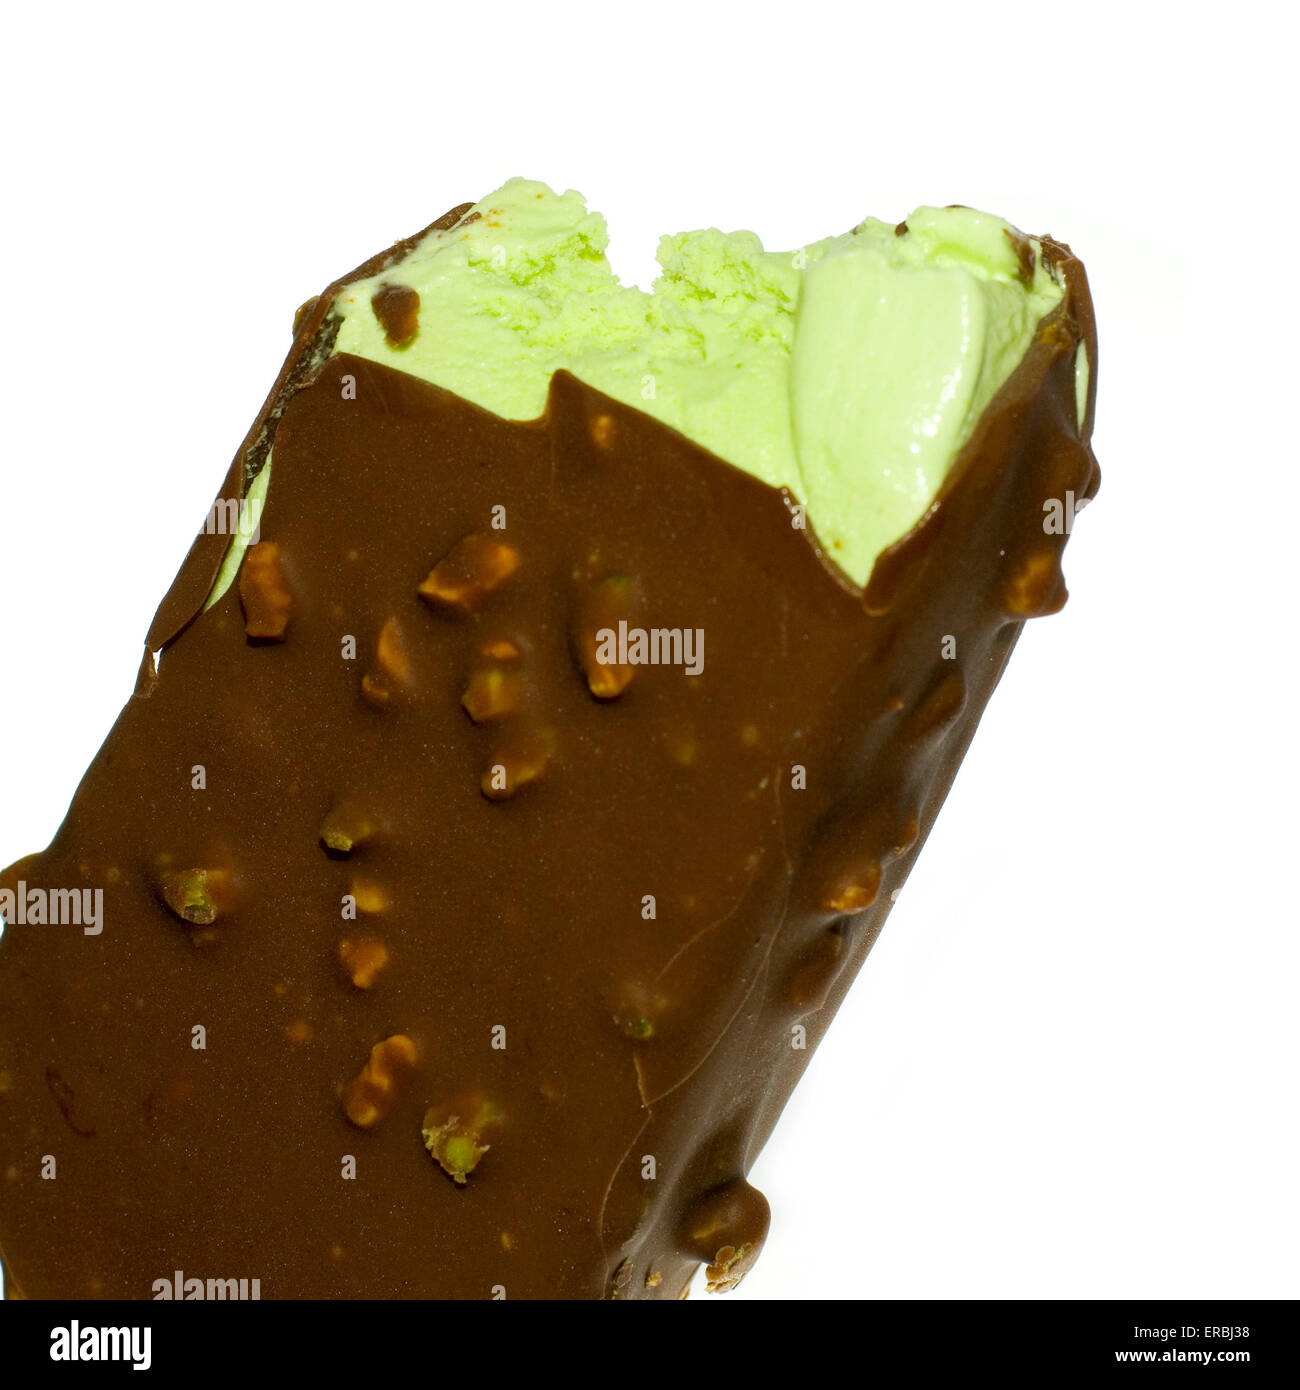 Paredes Magnum helado de pistacho abrió y mordido a exponer el helado verde. Foto de stock